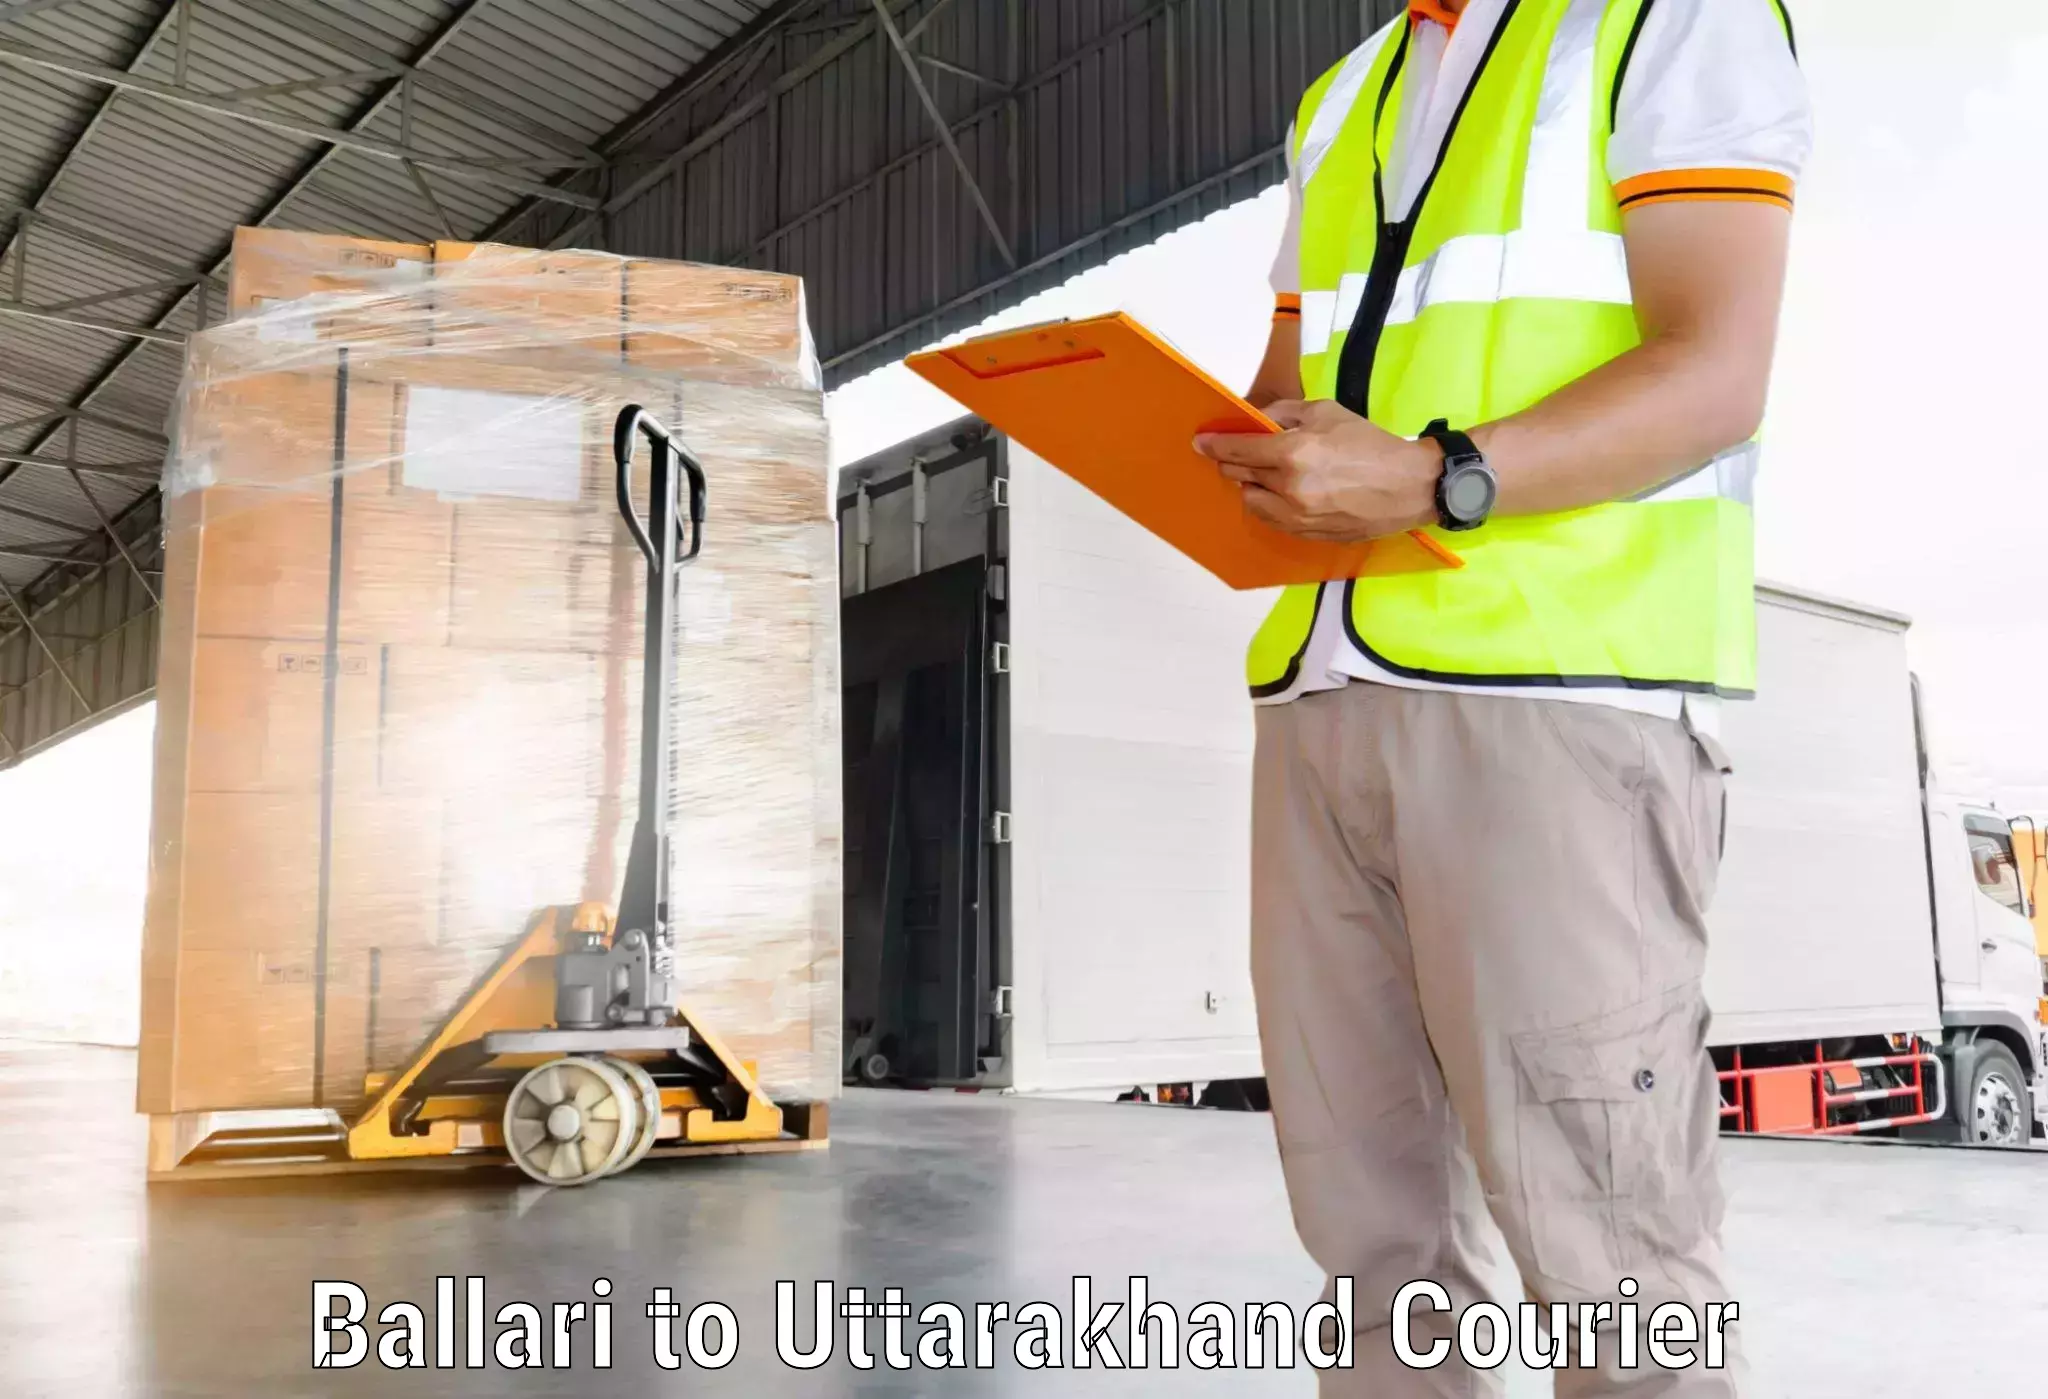 24/7 courier service Ballari to Doiwala